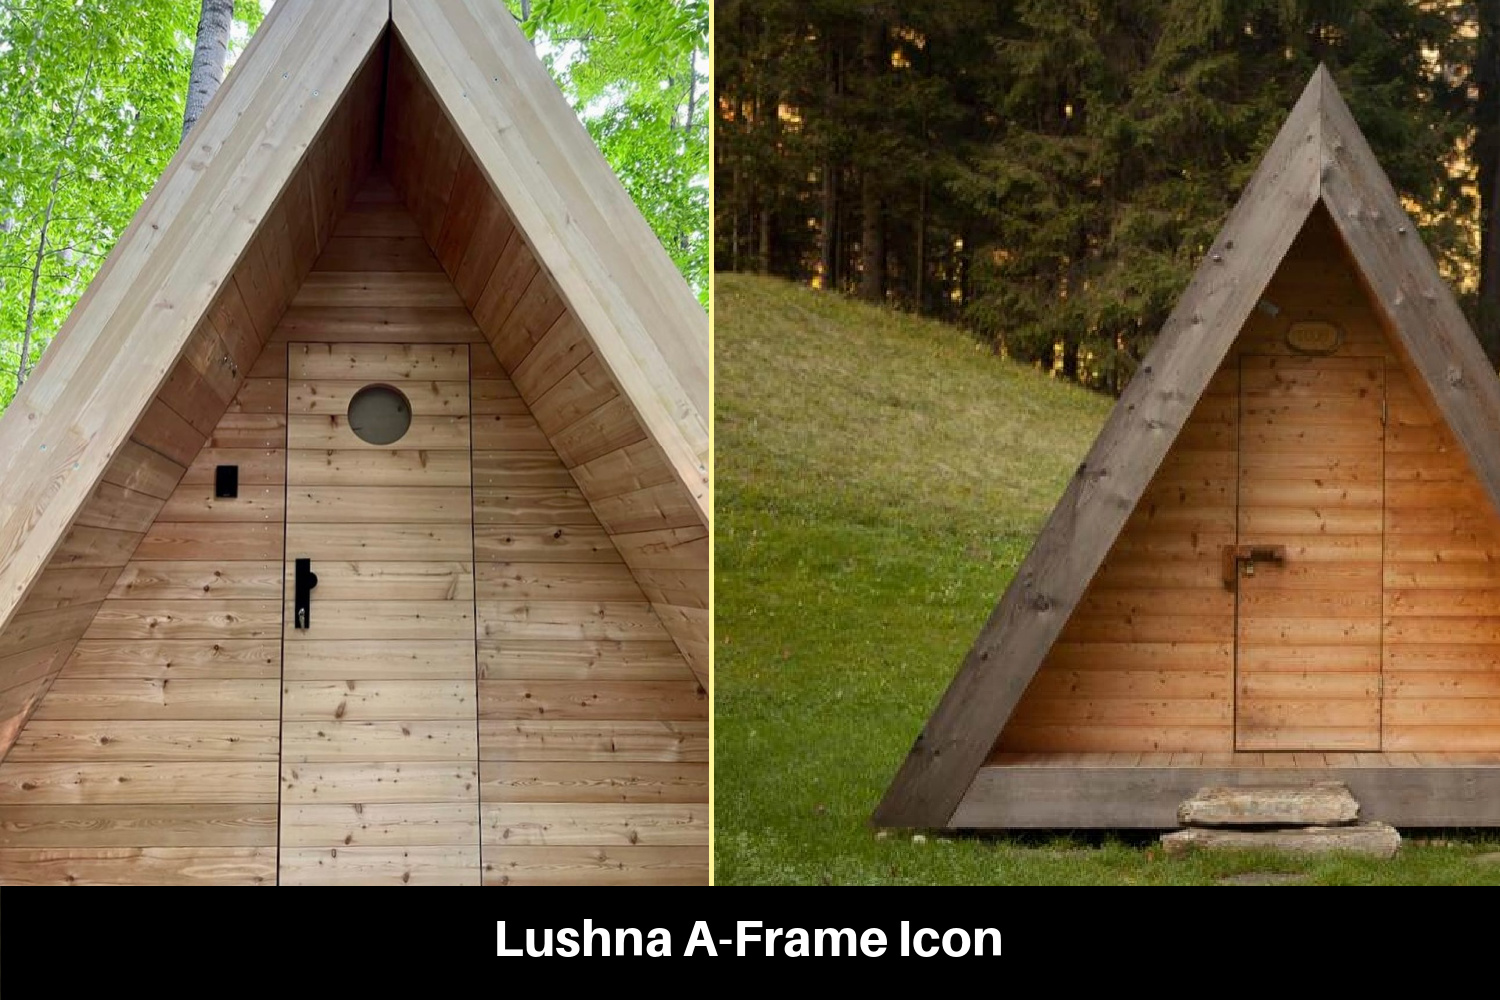 Lushna A-Frame Icon